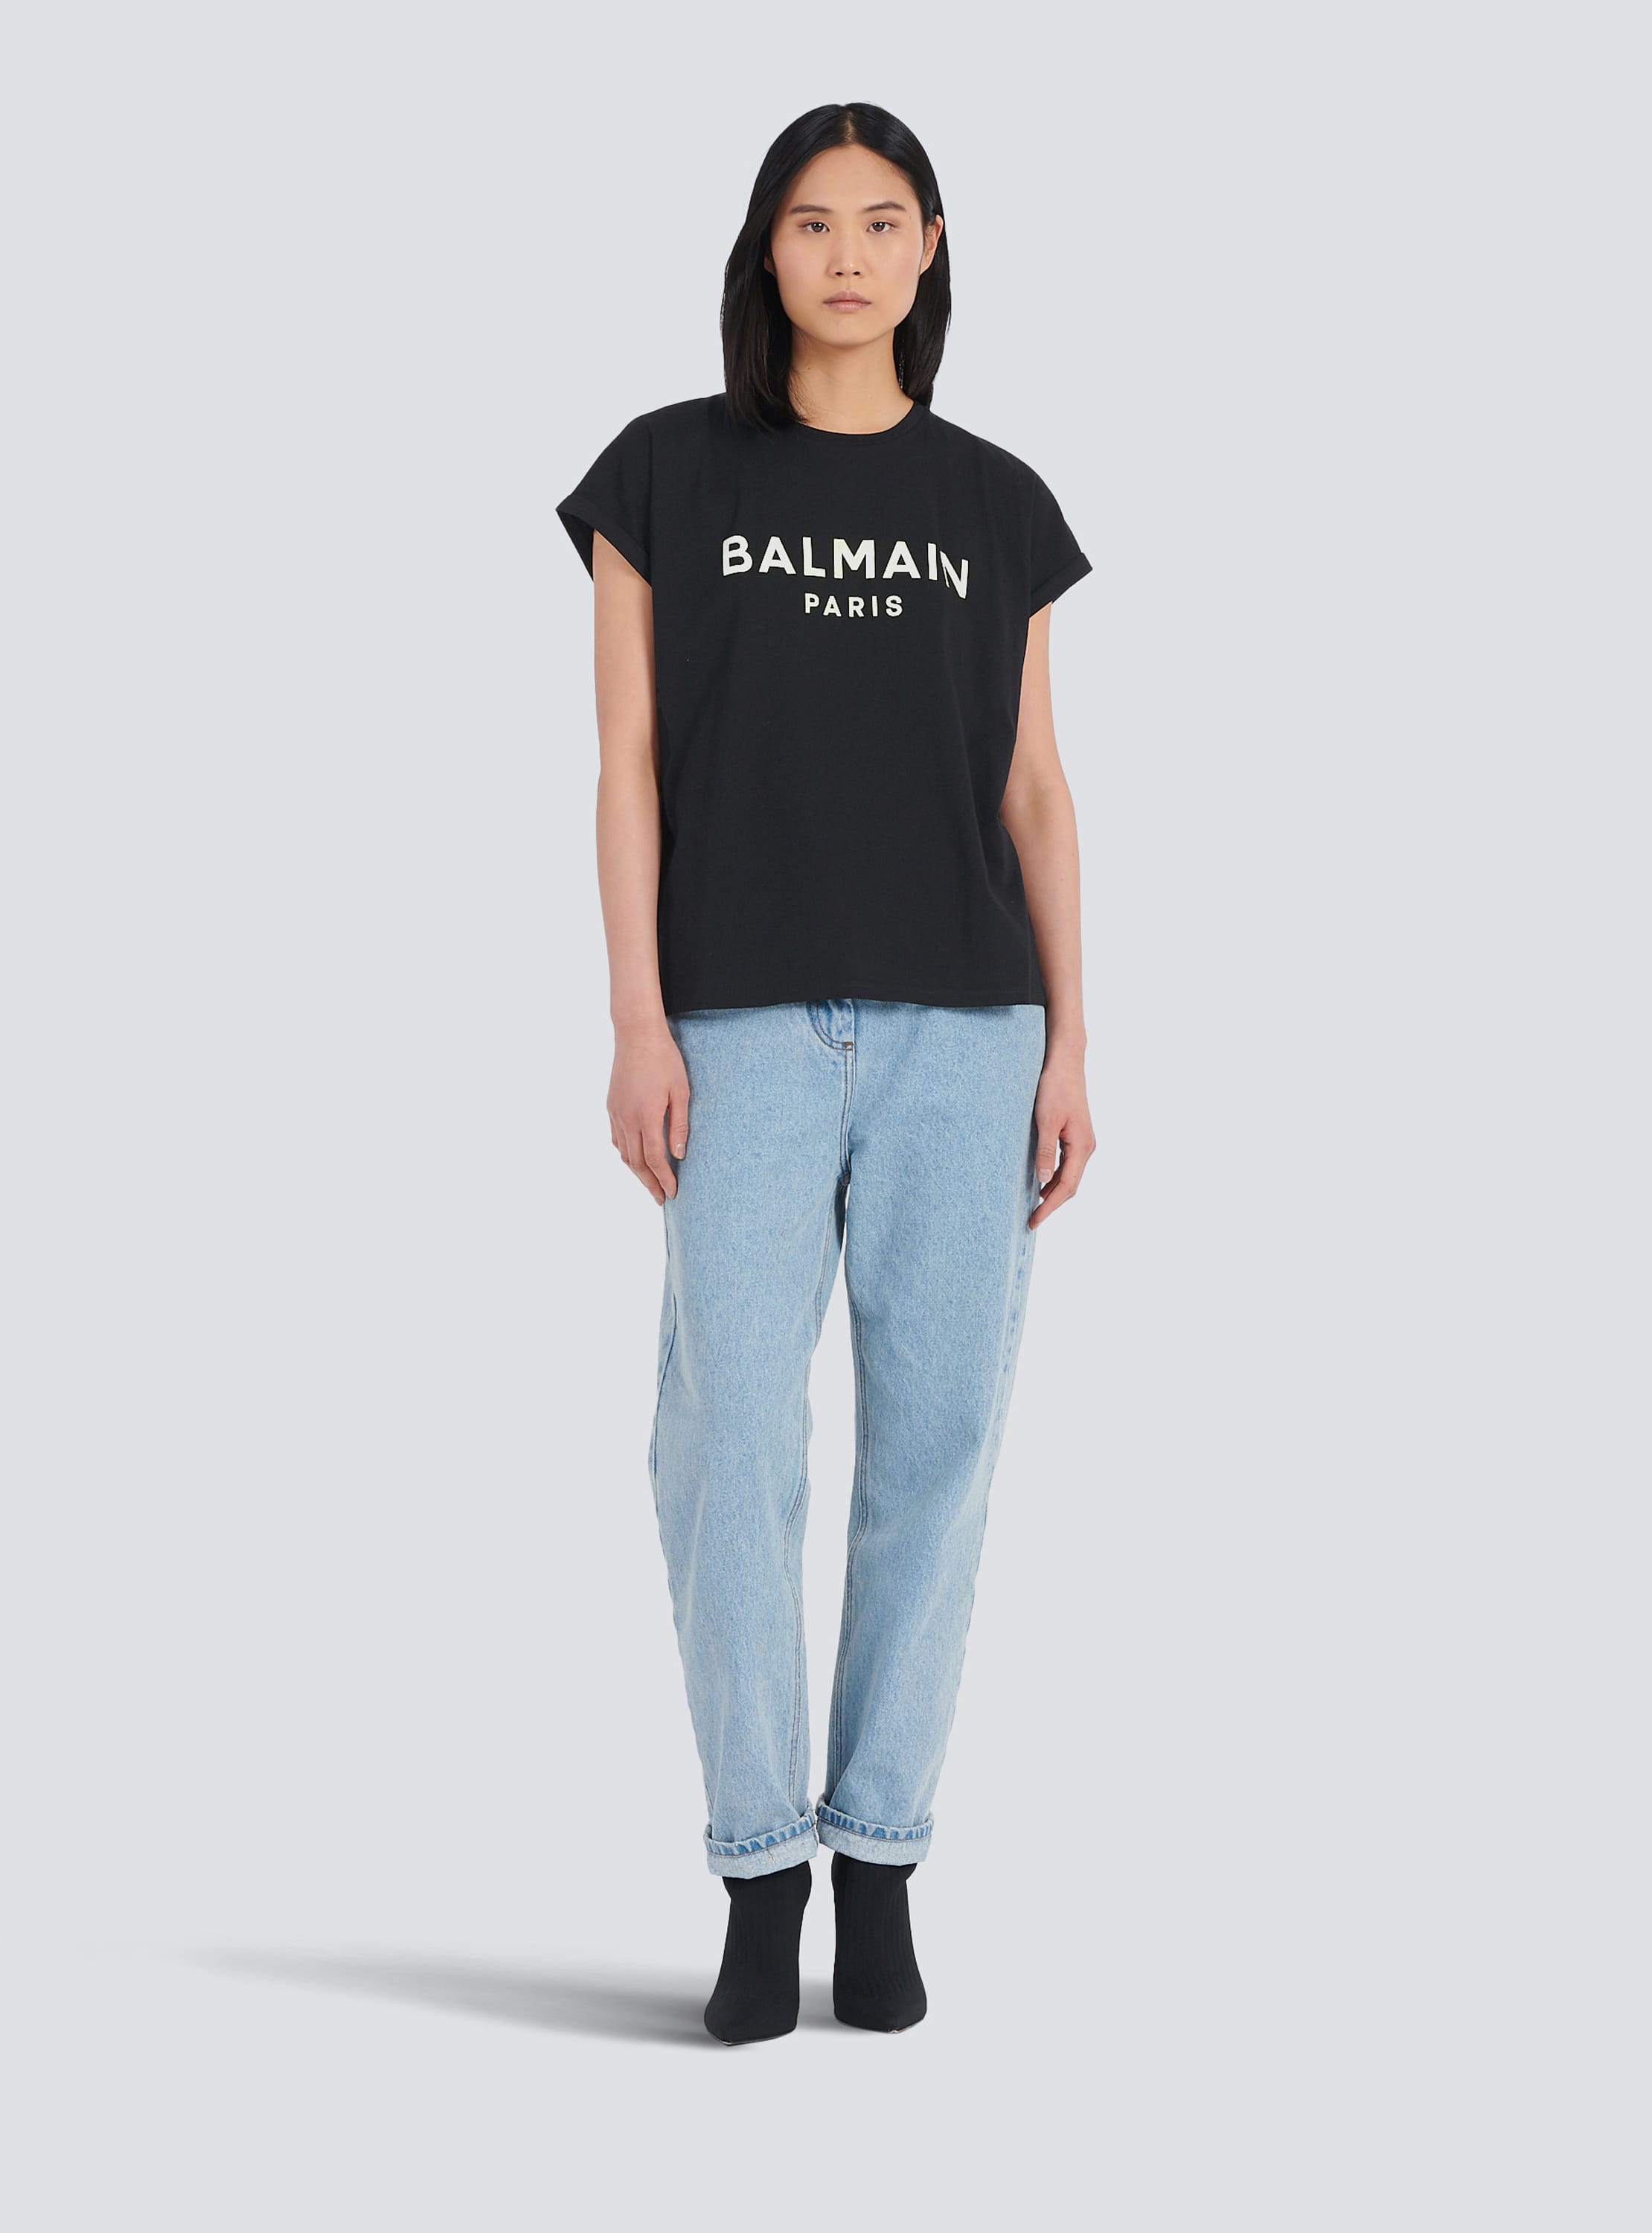 Camiseta de algodón de diseño ecológico con el logotipo de Balmain estampado